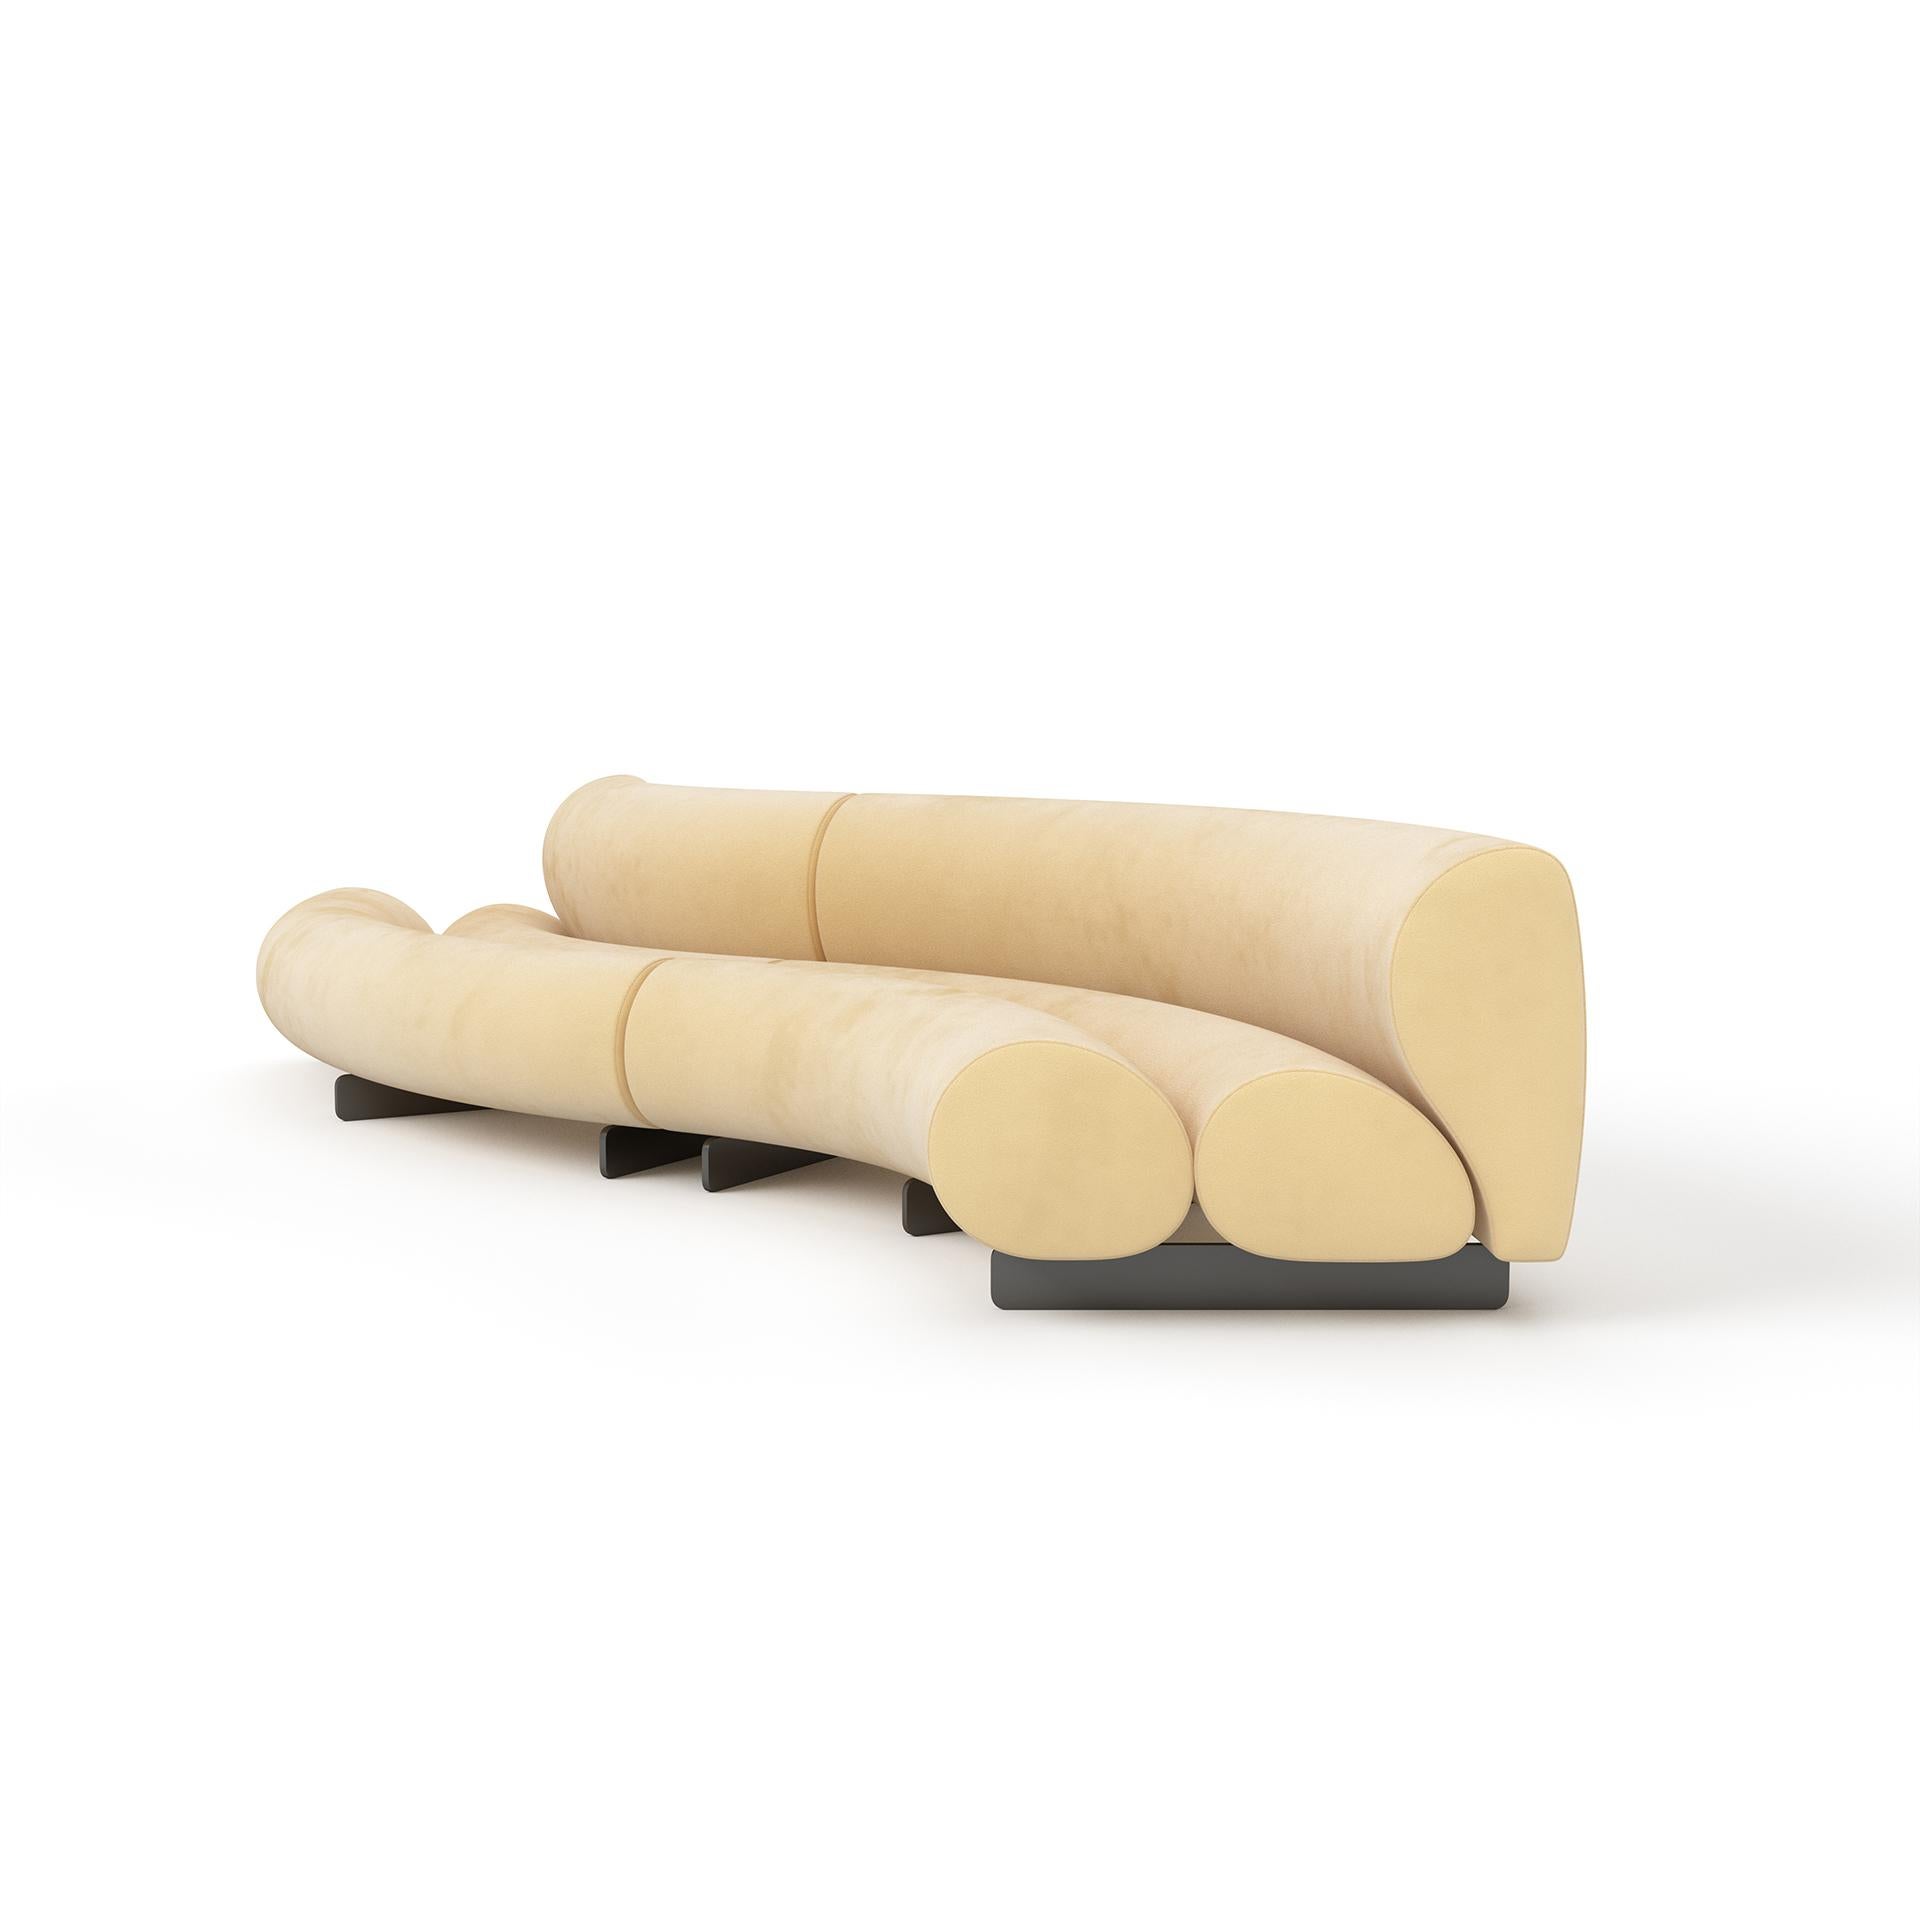 Das Celeste-Sofa bietet unbegrenzte Konfigurationsmöglichkeiten in geschwungenen und geraden Ausführungen, um Ihren Sitzbereich individuell zu gestalten. Hergestellt in Los Angeles.

 